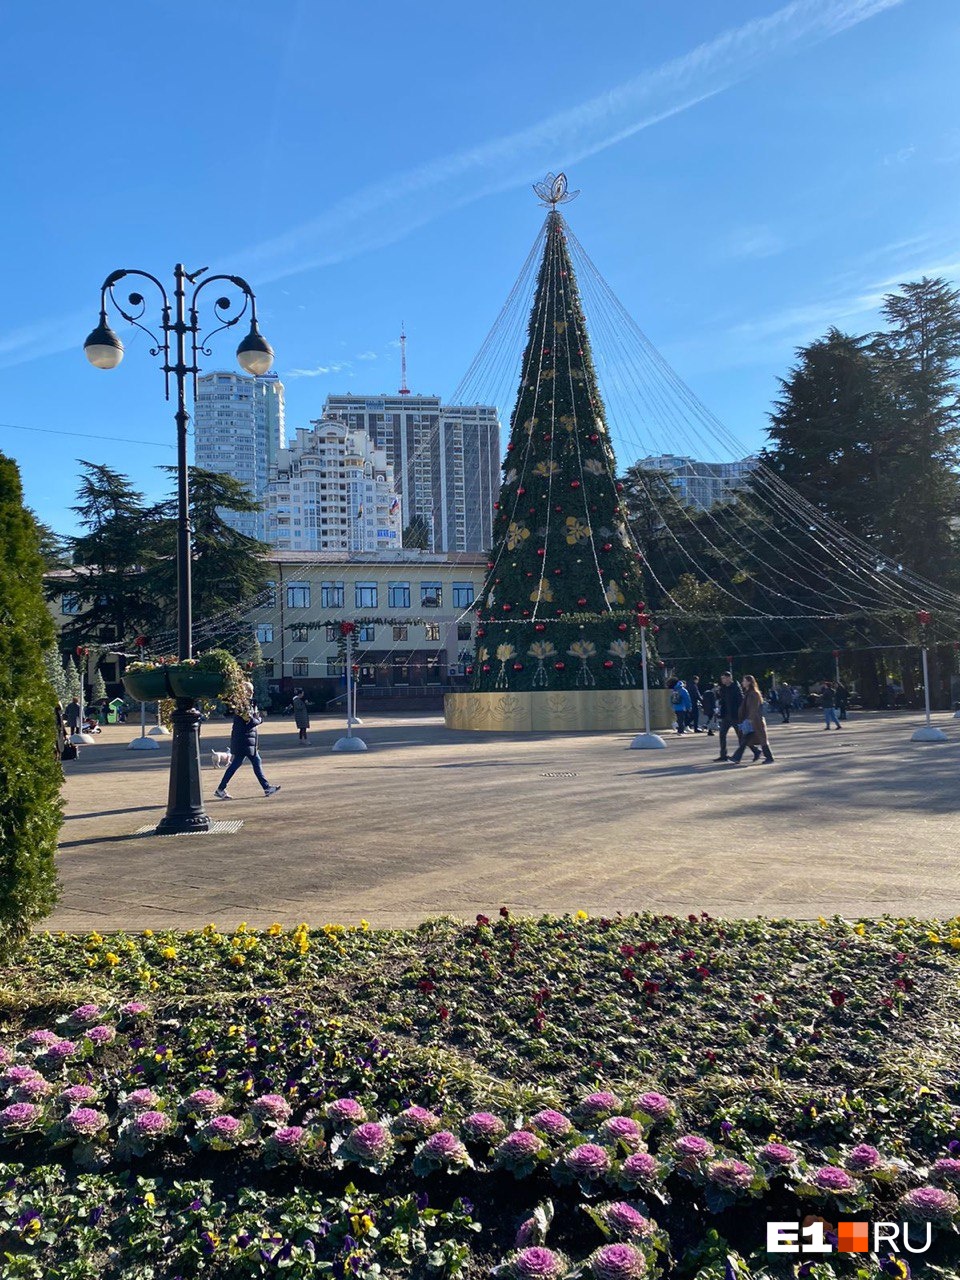 Новогодняя елка без снега — картина, невозможная для Екатеринбурга